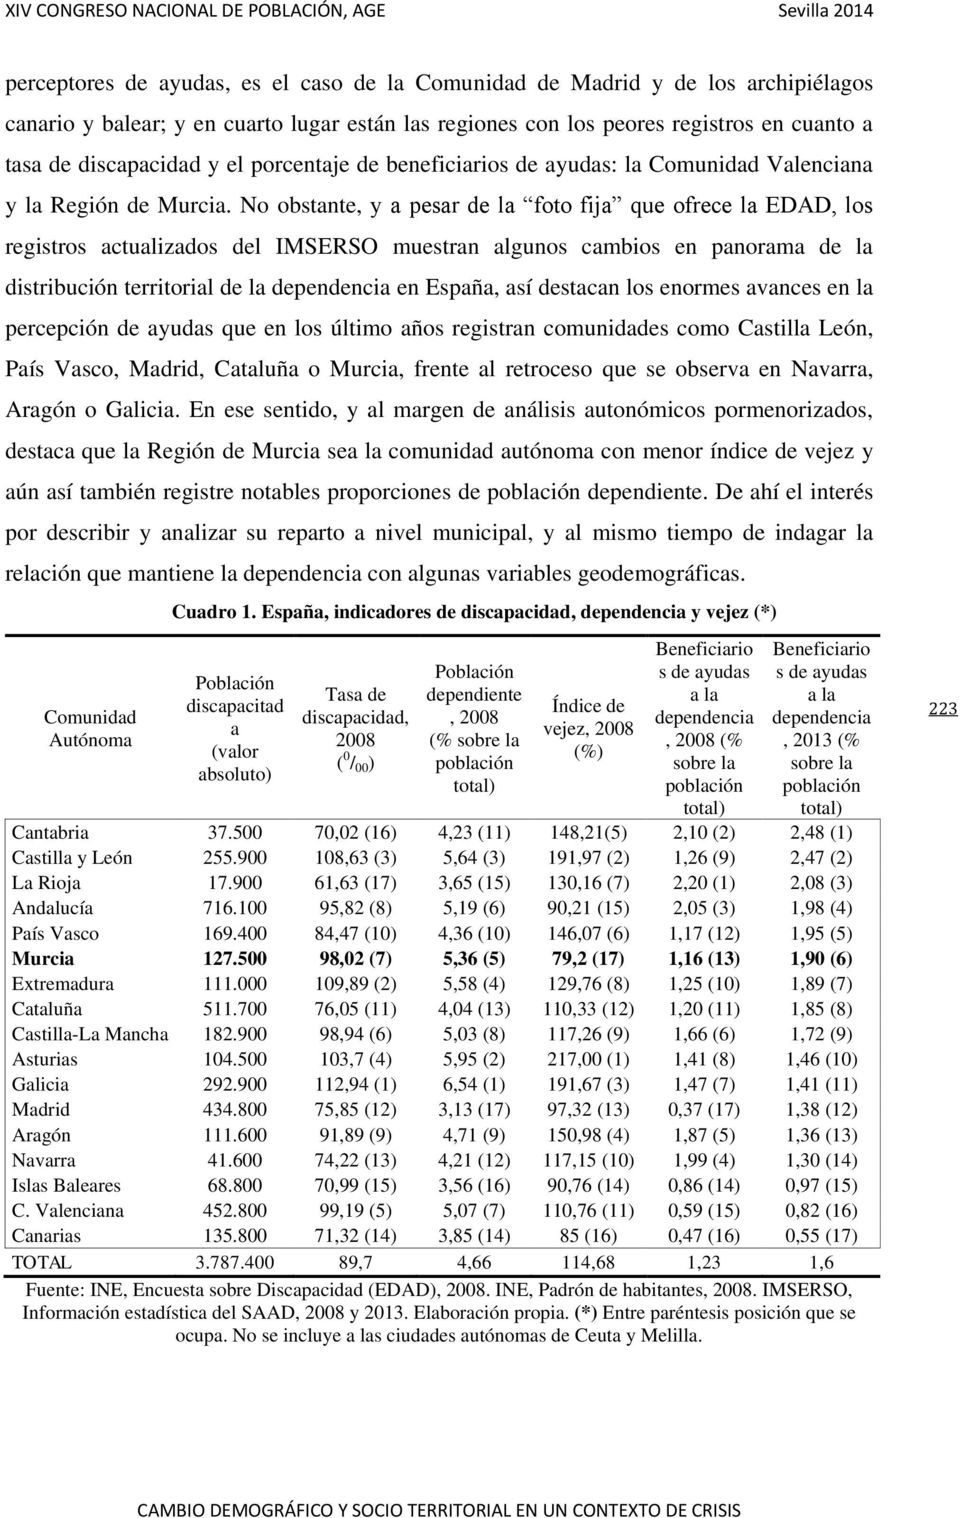 No obstante, y a pesar de la foto fija que ofrece la EDAD, los registros actualizados del IMSERSO muestran algunos cambios en panorama de la distribución territorial de la dependencia en España, así